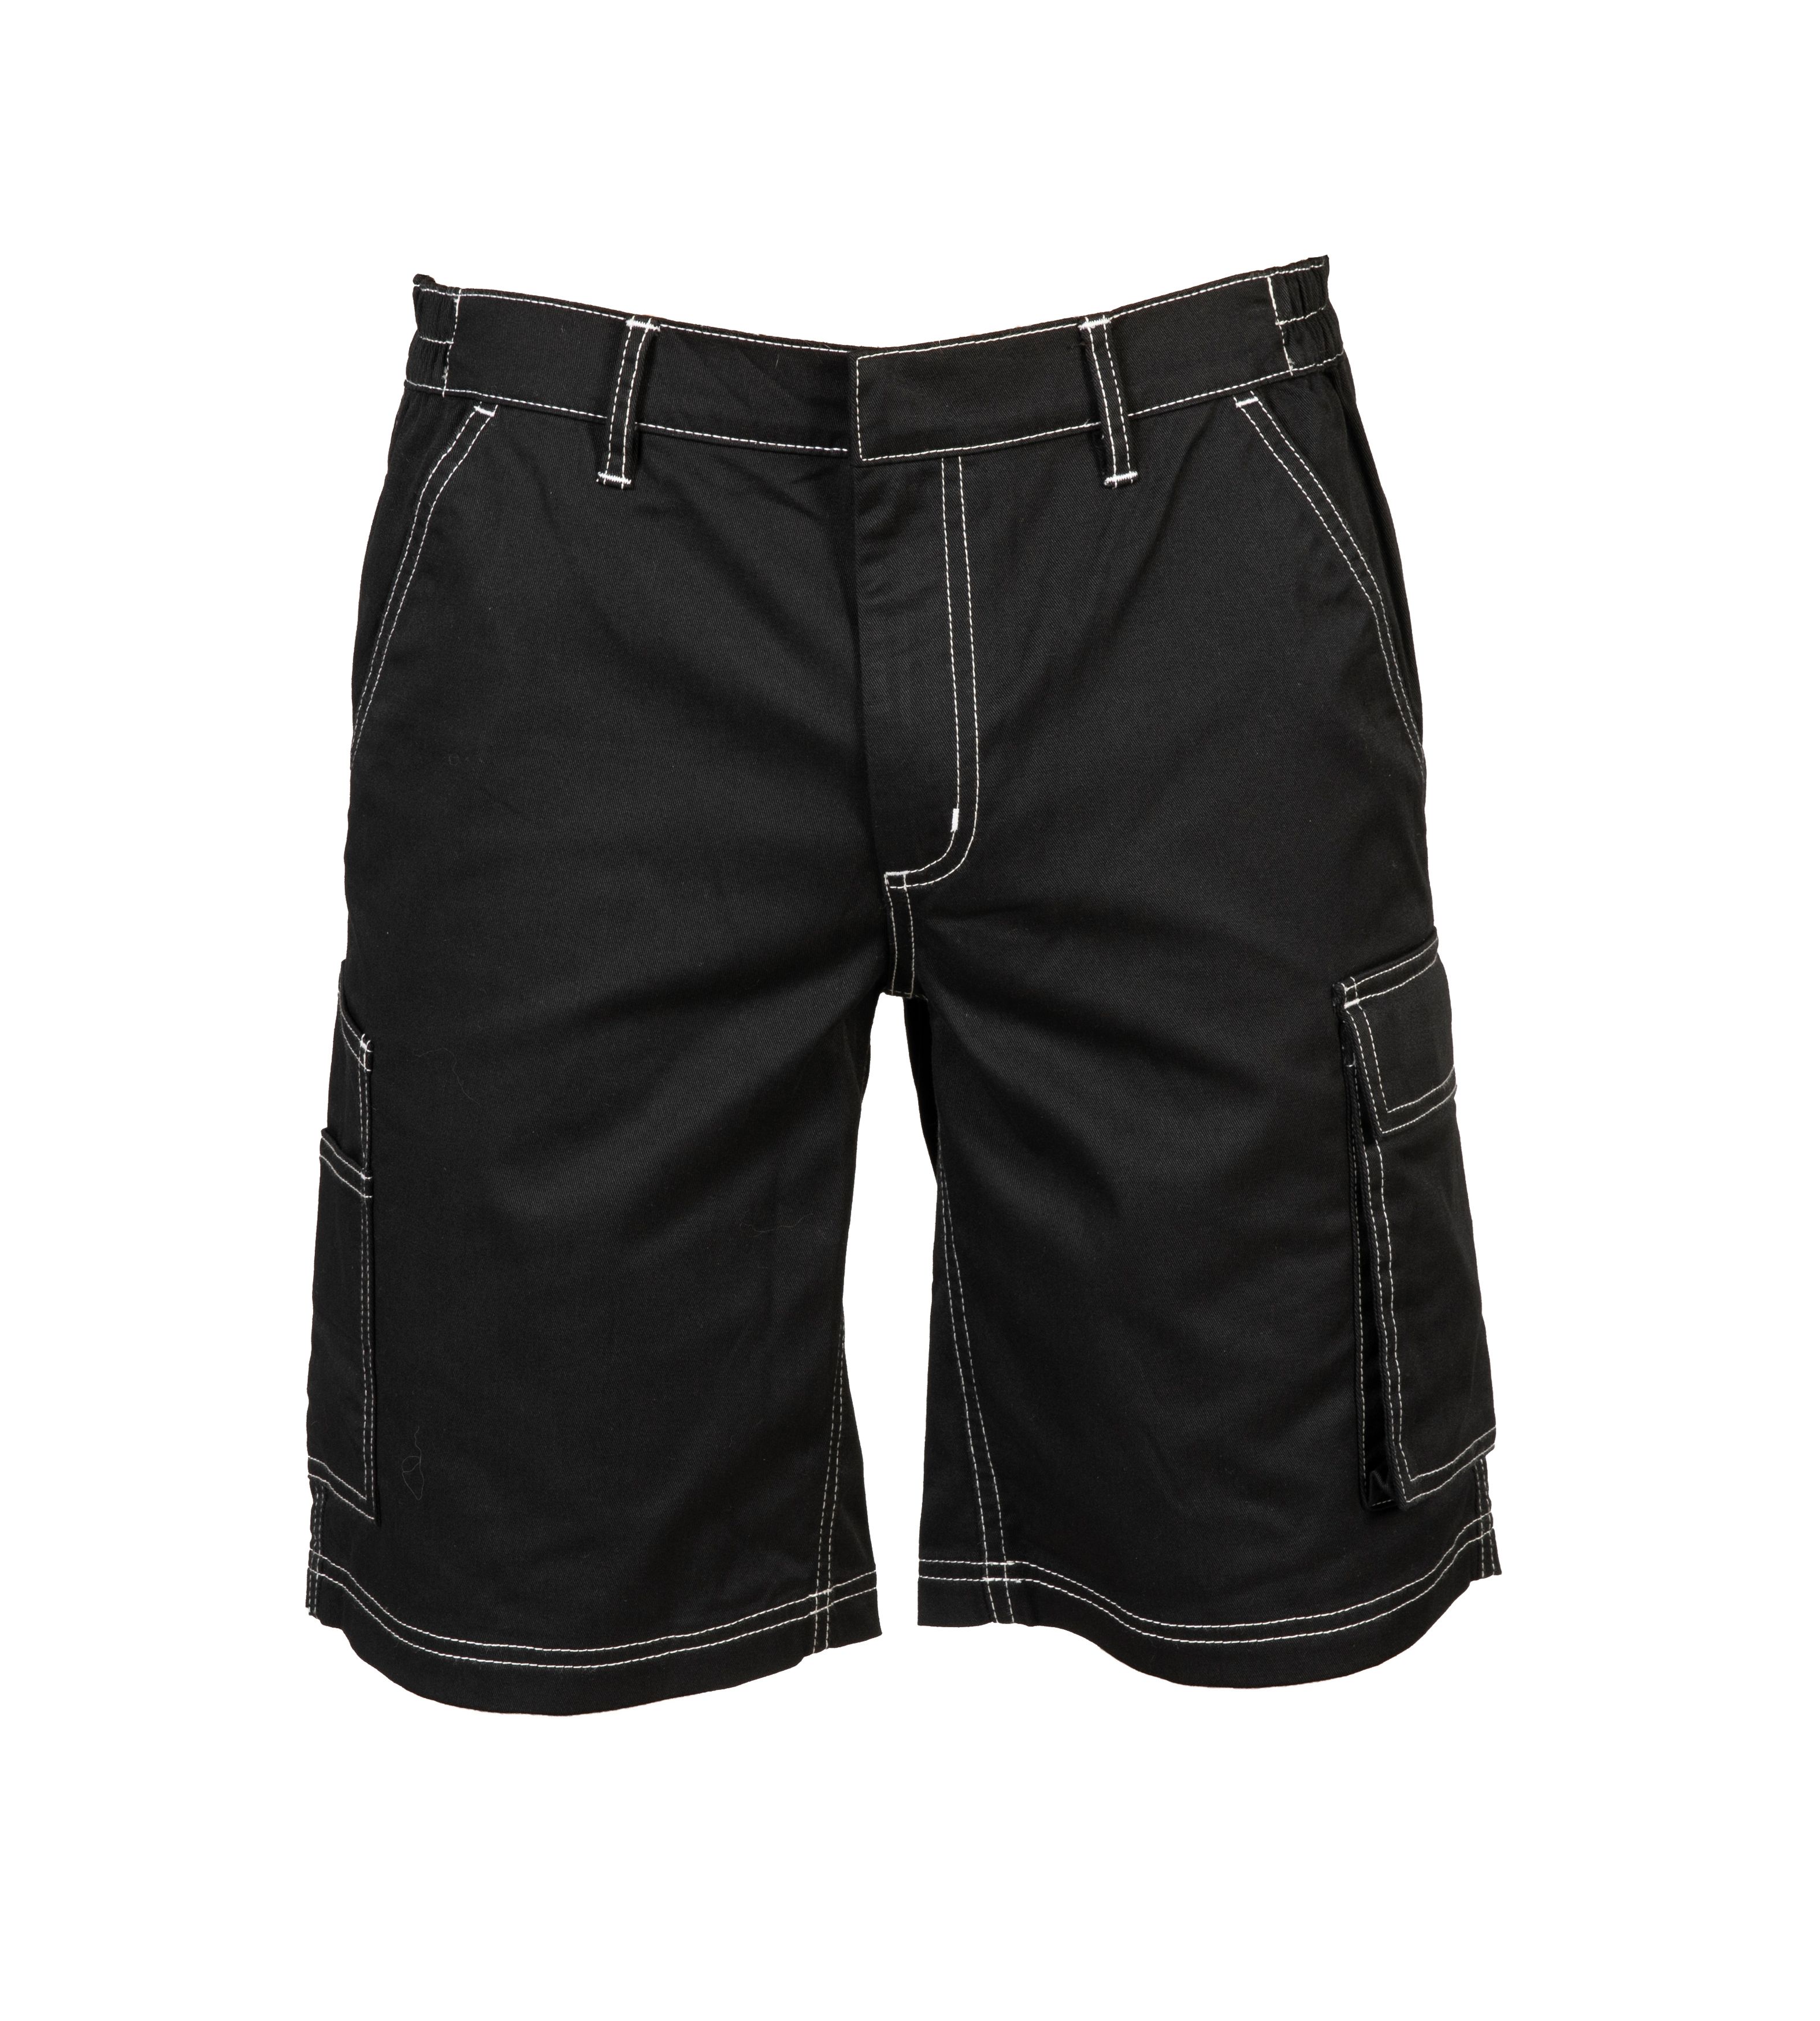 Spodnie Vigo Stretch Shorts